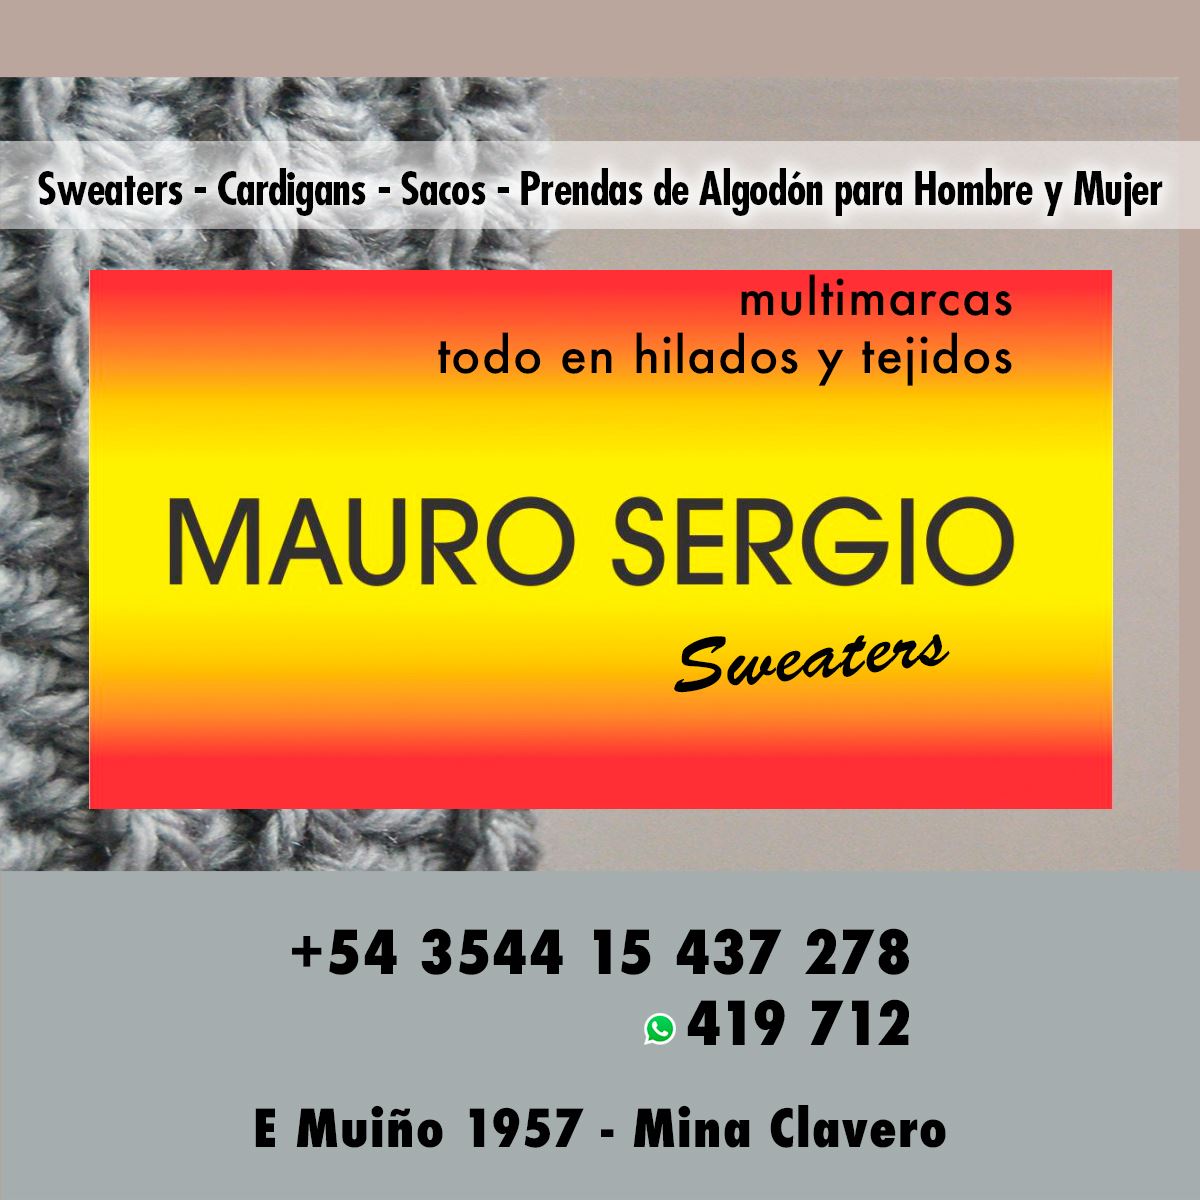 Indumentaria Mauro Sergio Sweaters - InfoGuia Traslasierra - Cardigans - Sacor - Sweaters - prendas de algodón para hombre y mujer.  Todo en hilados y tejidos Multimarcas